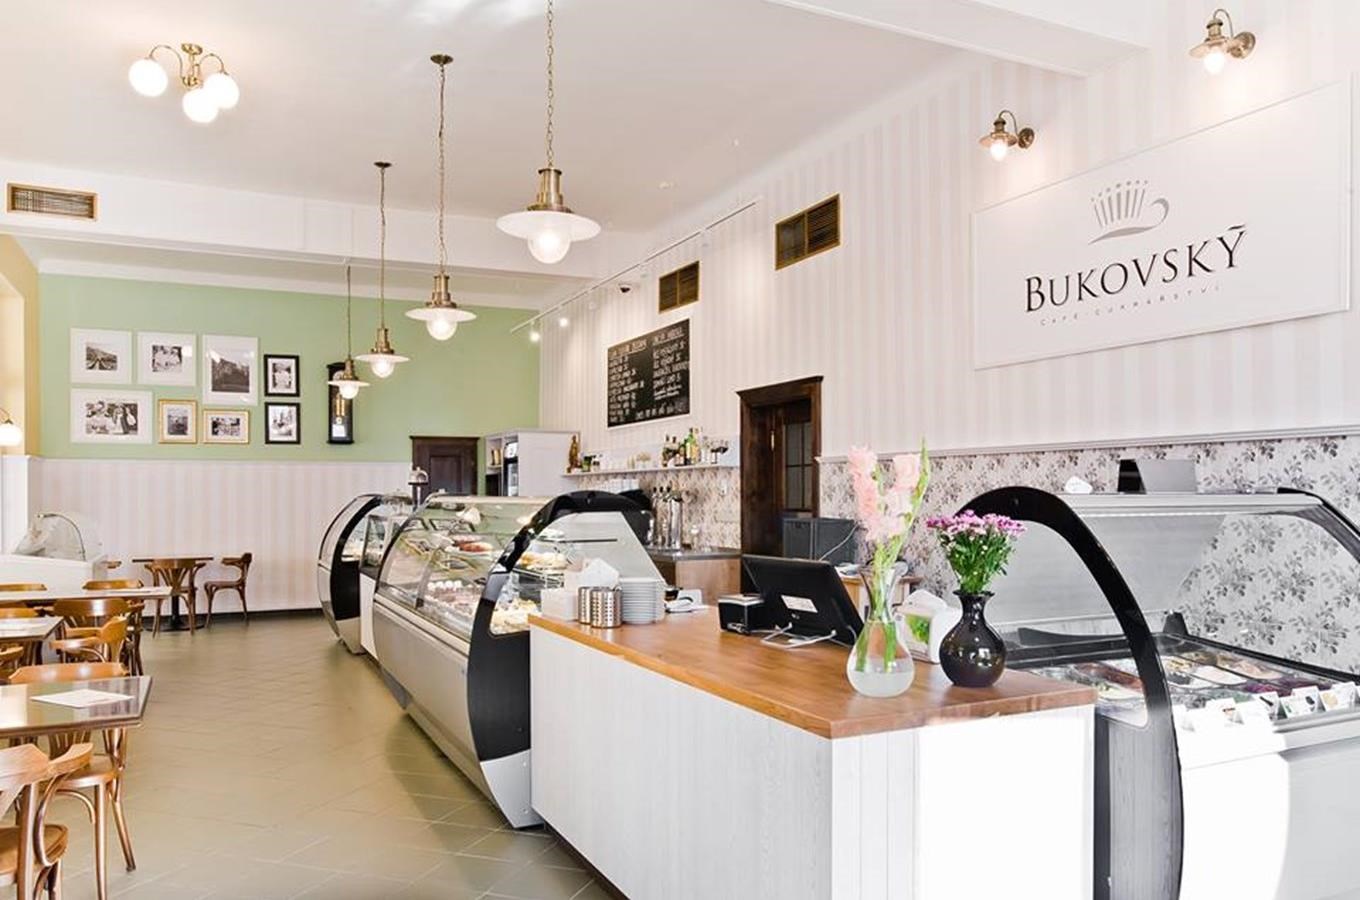 Cukrářství a kavárna Bukovský